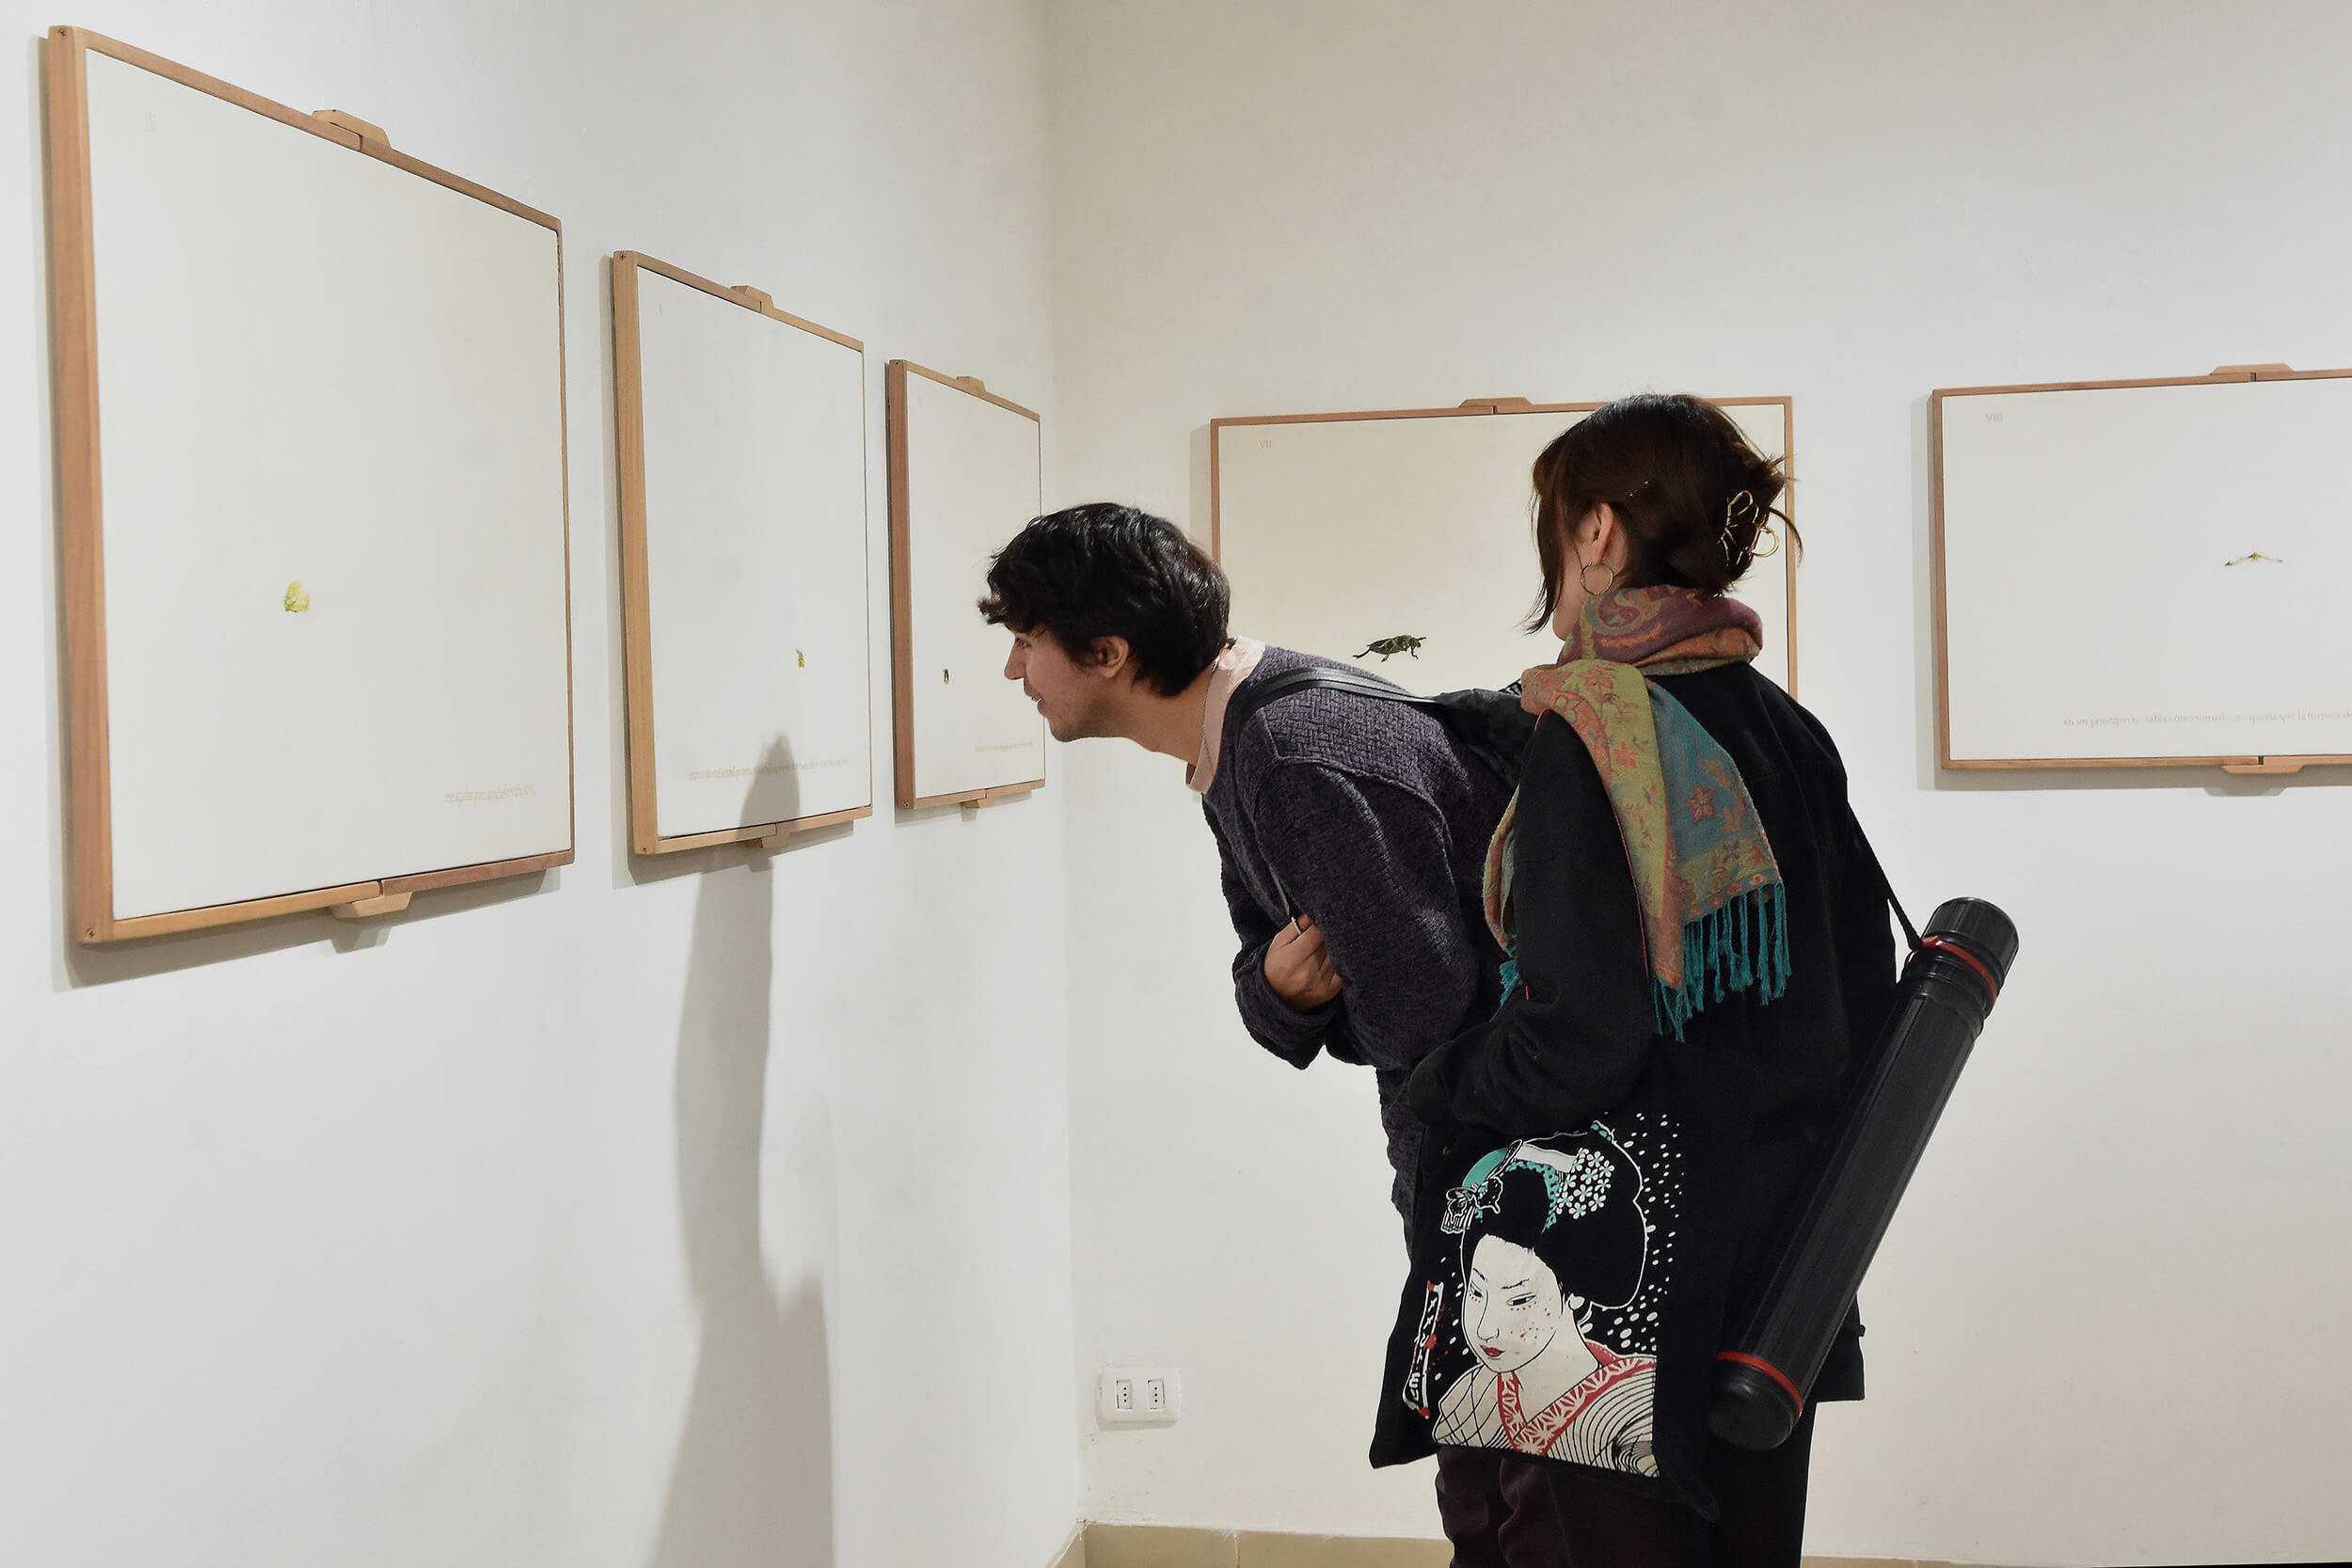 Dos jóvenes mirando cuadros expuestos en una pared